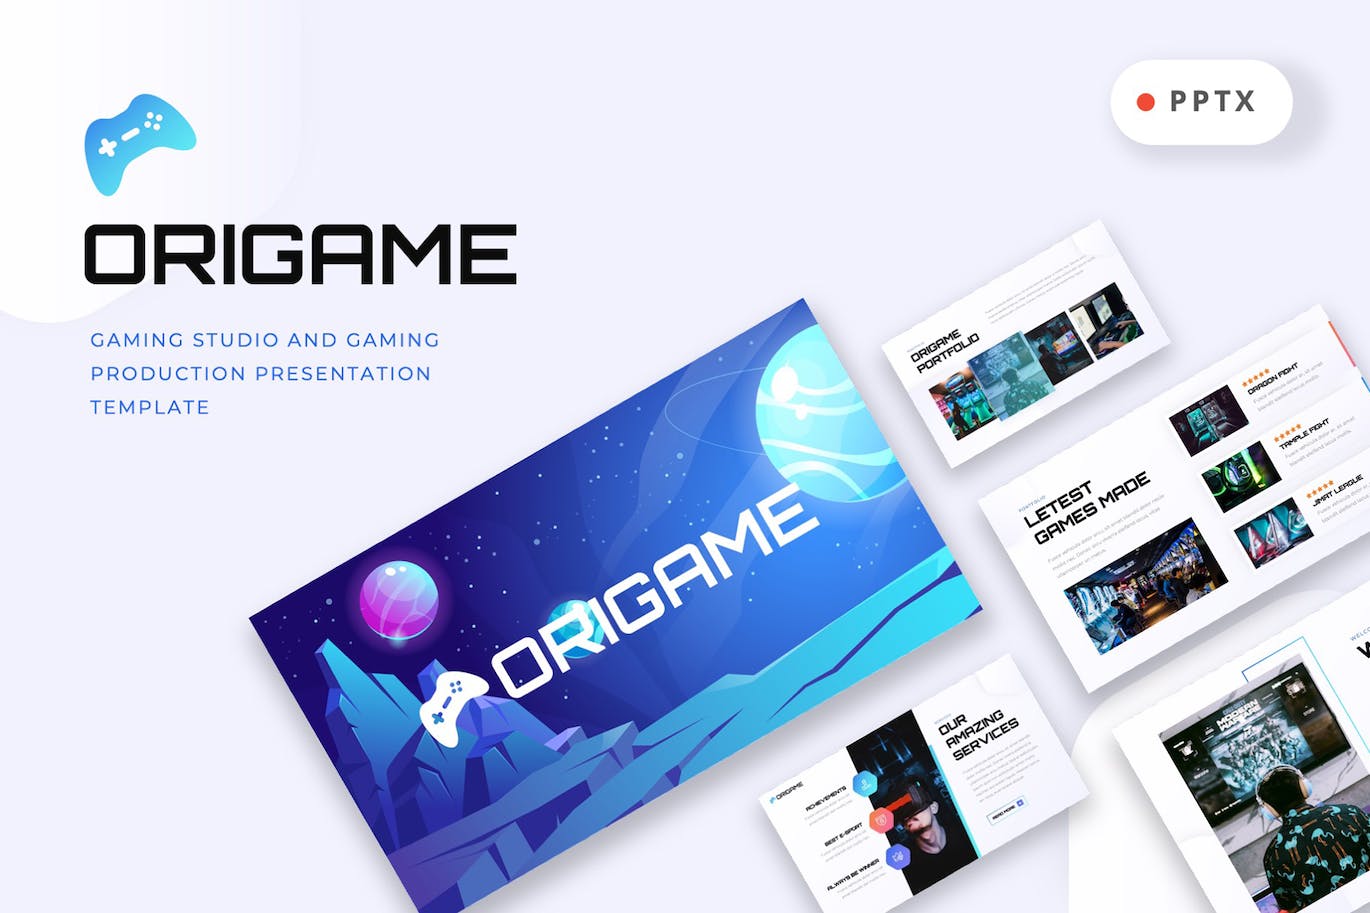 游戏制作工作室PPT模板下载 ORIGAME – Gaming Studio Powerpoint Template 幻灯图表 第1张